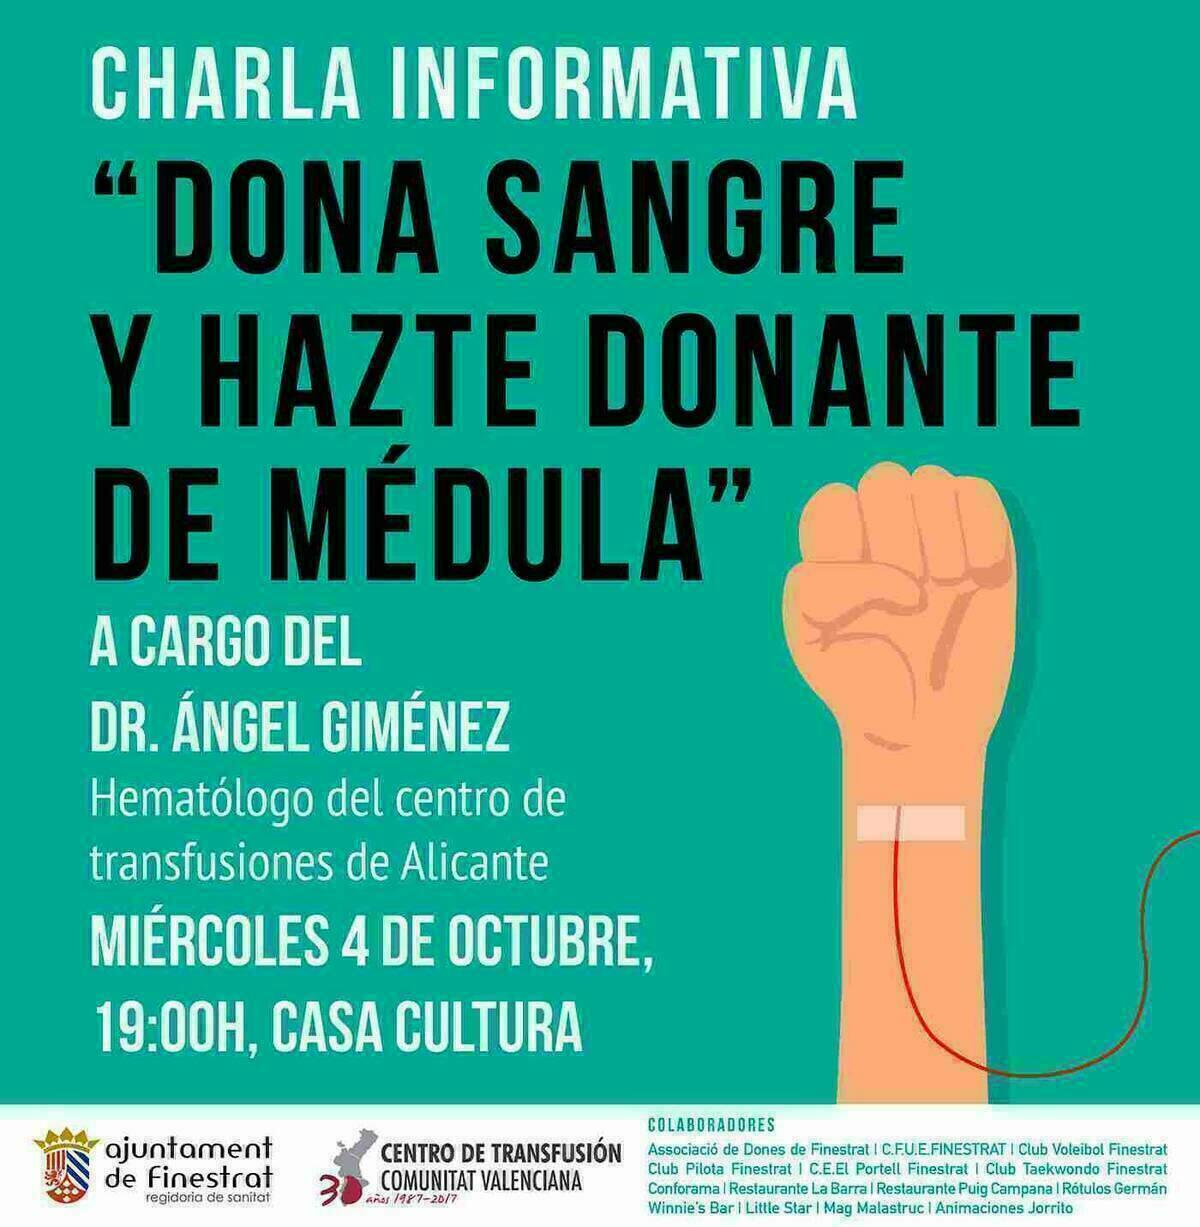 Mañana se celebra la charla informativa “dona sangre y hazte donante de médula” en la Casa de Cultura de Finestrat